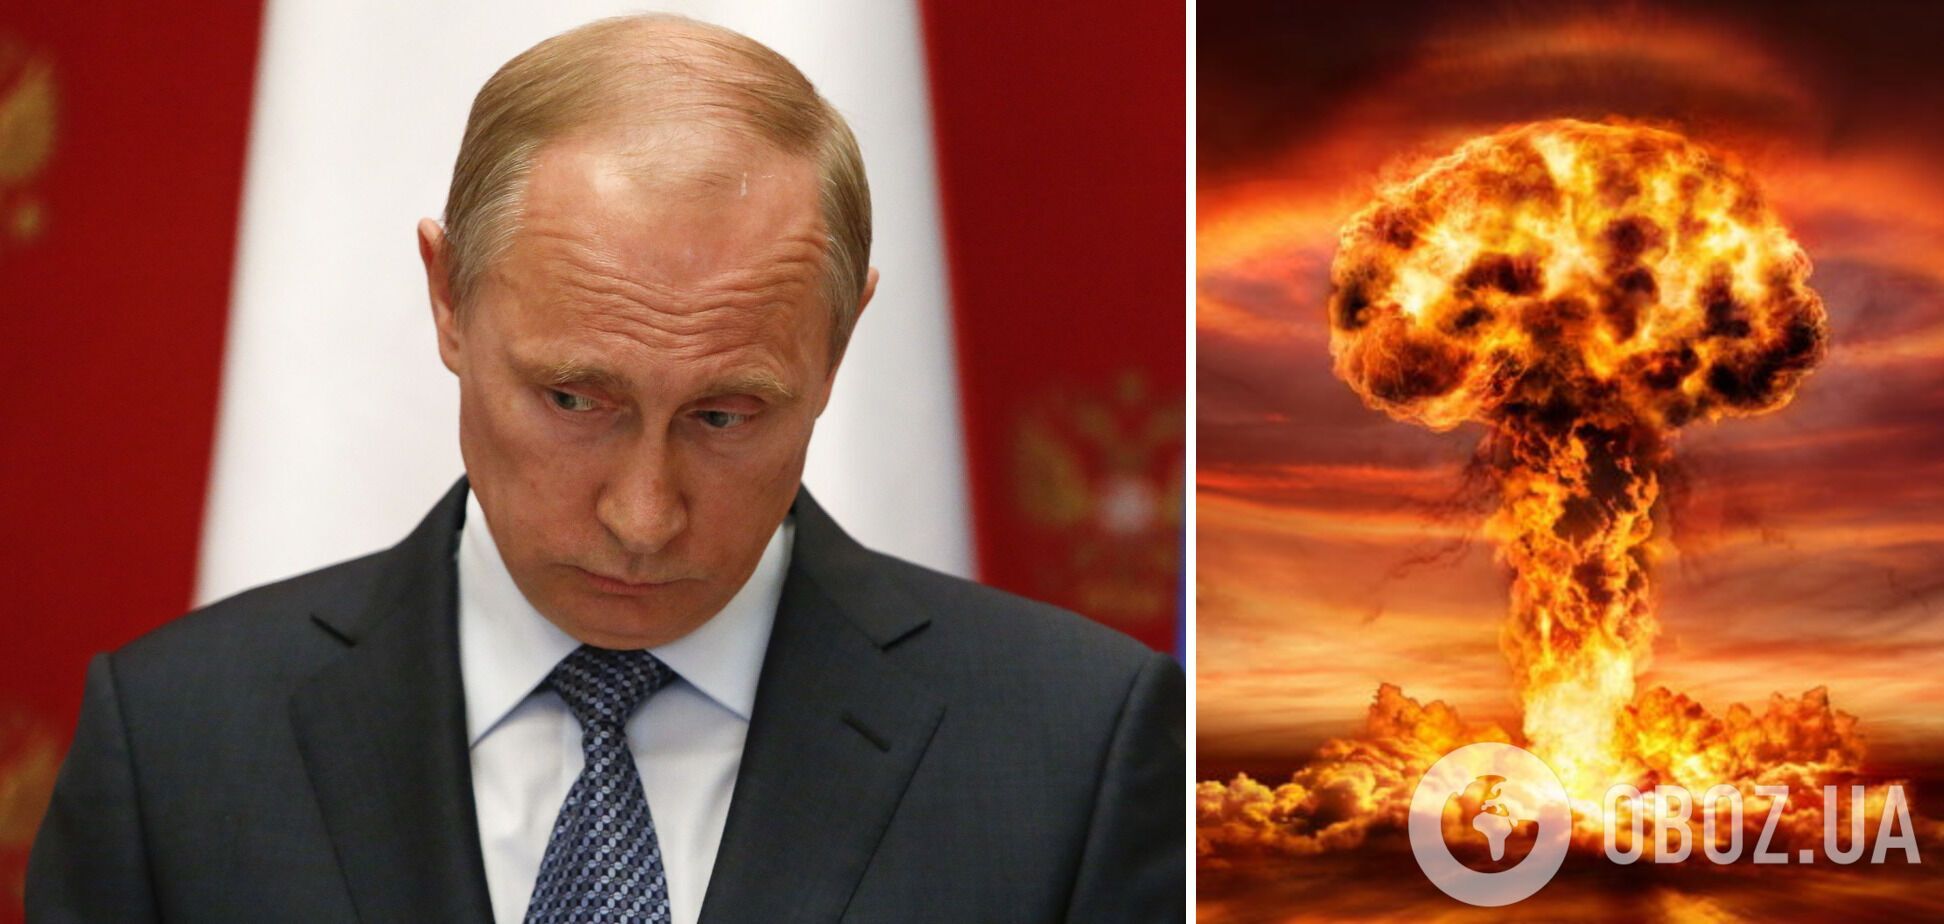 У Путина есть план по применению ядерного оружия, но окружение ему не позволит этого сделать